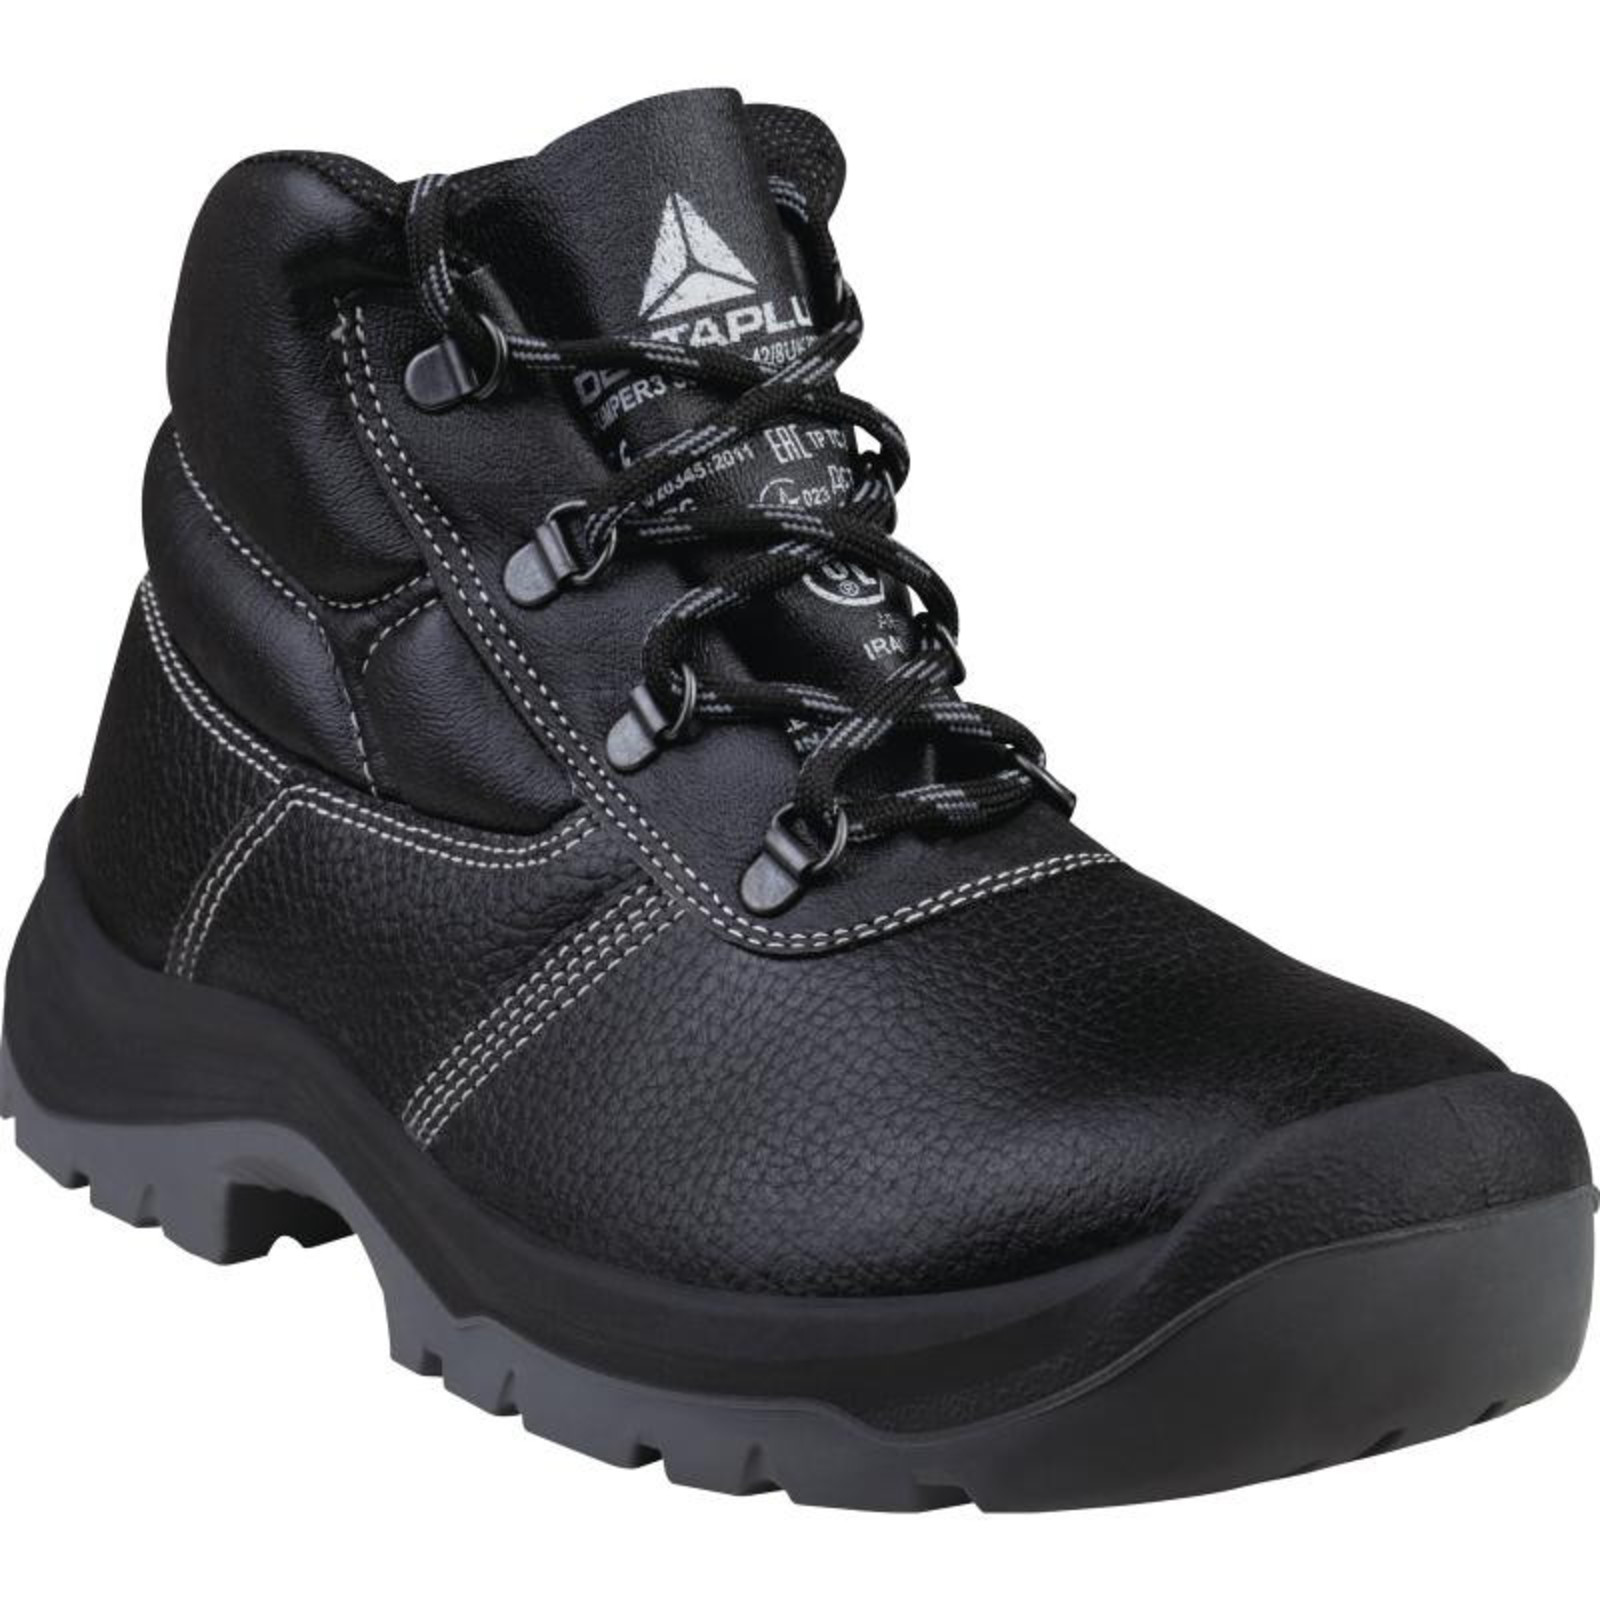 Členková bezpečnostná obuv Delta Plus Jumper3 S3 SRC - veľkosť: 45, farba: čierna